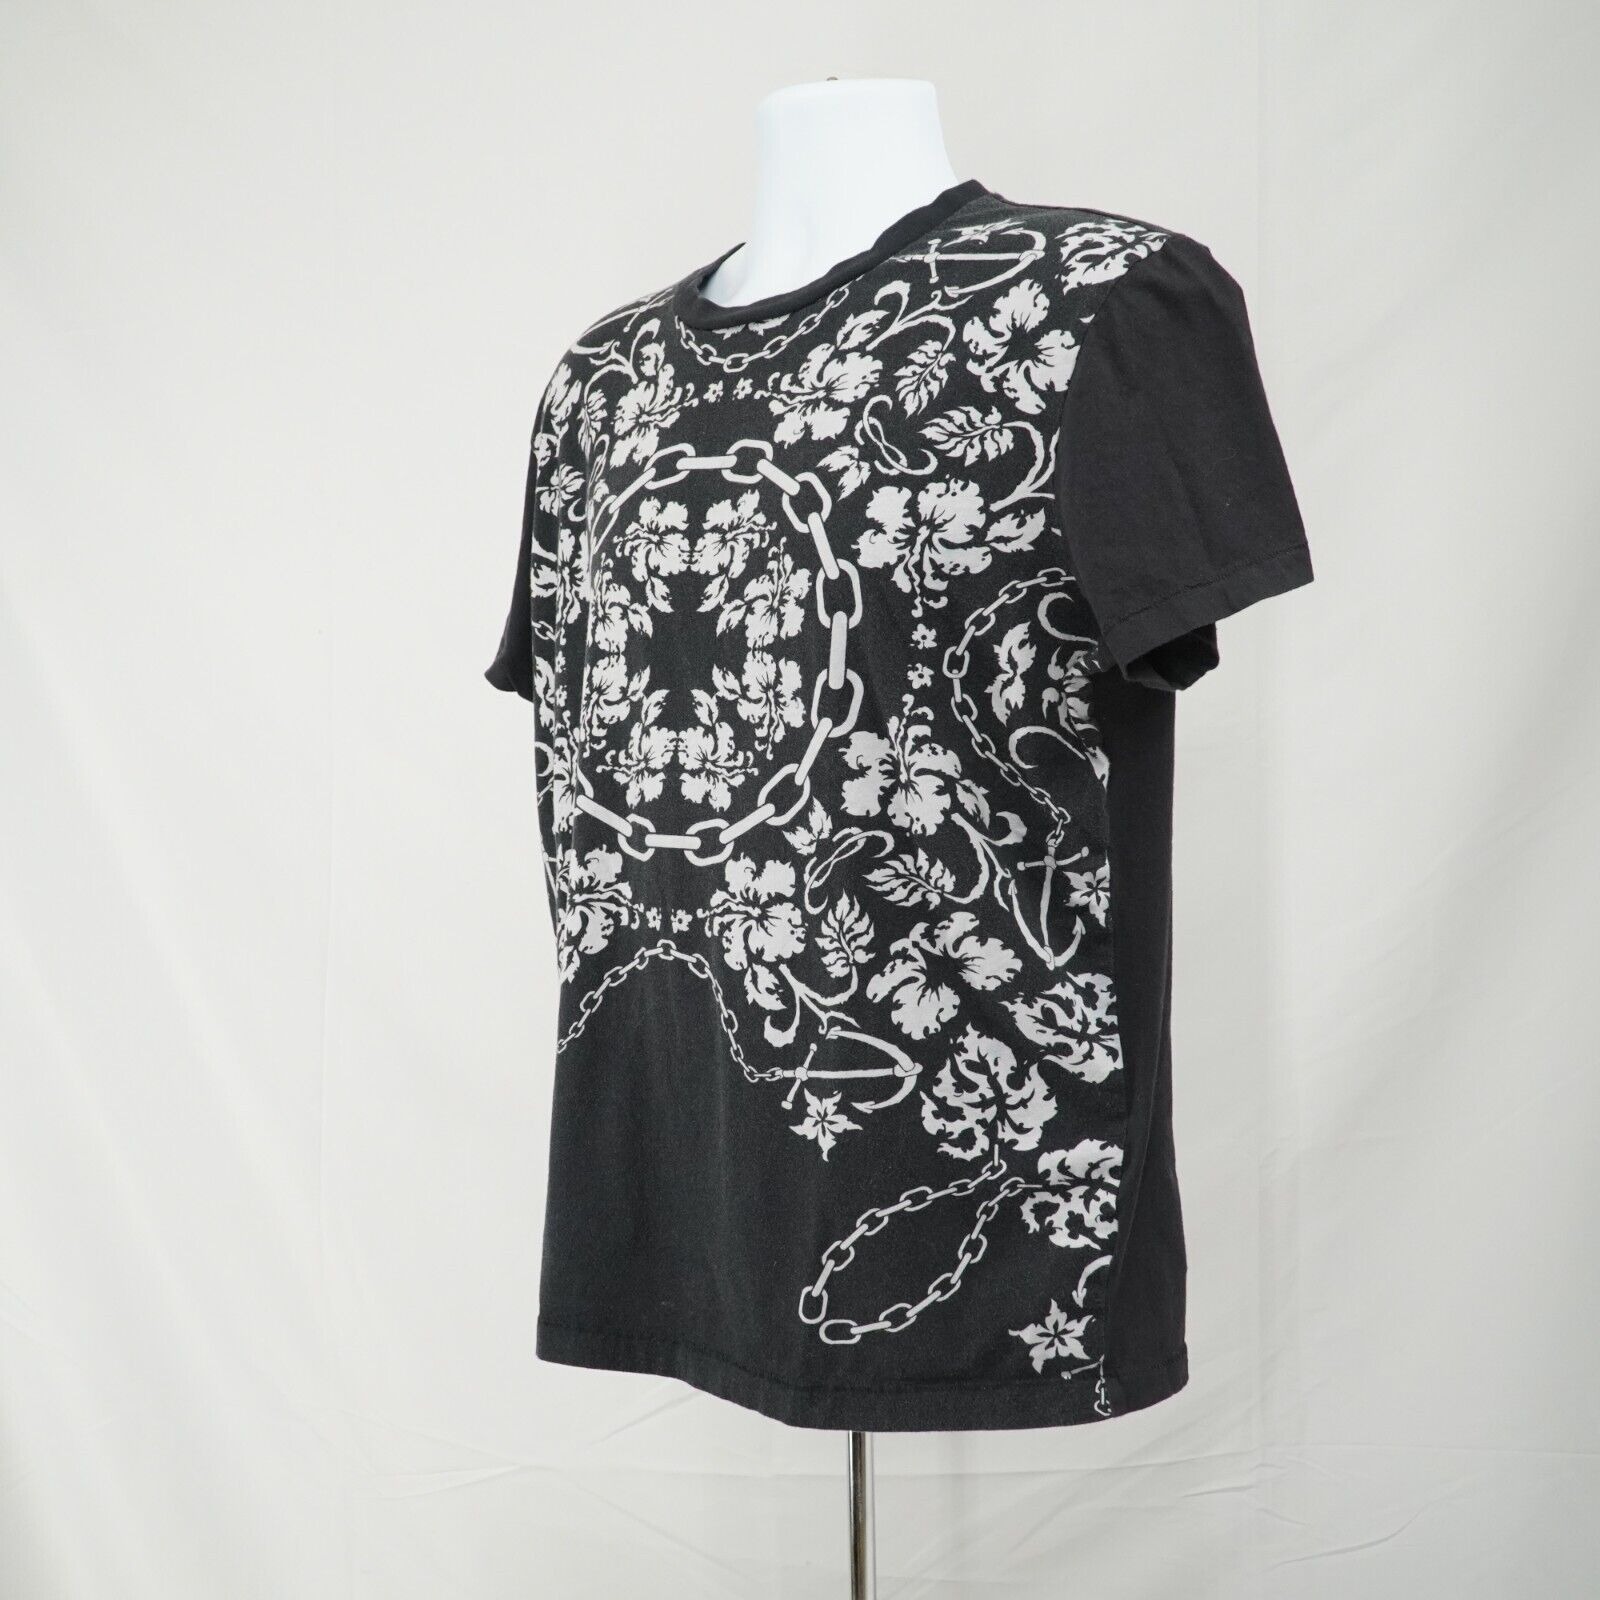 Black White Printed Shirt Floral Chains Anchor Hawaiian Tee - 3